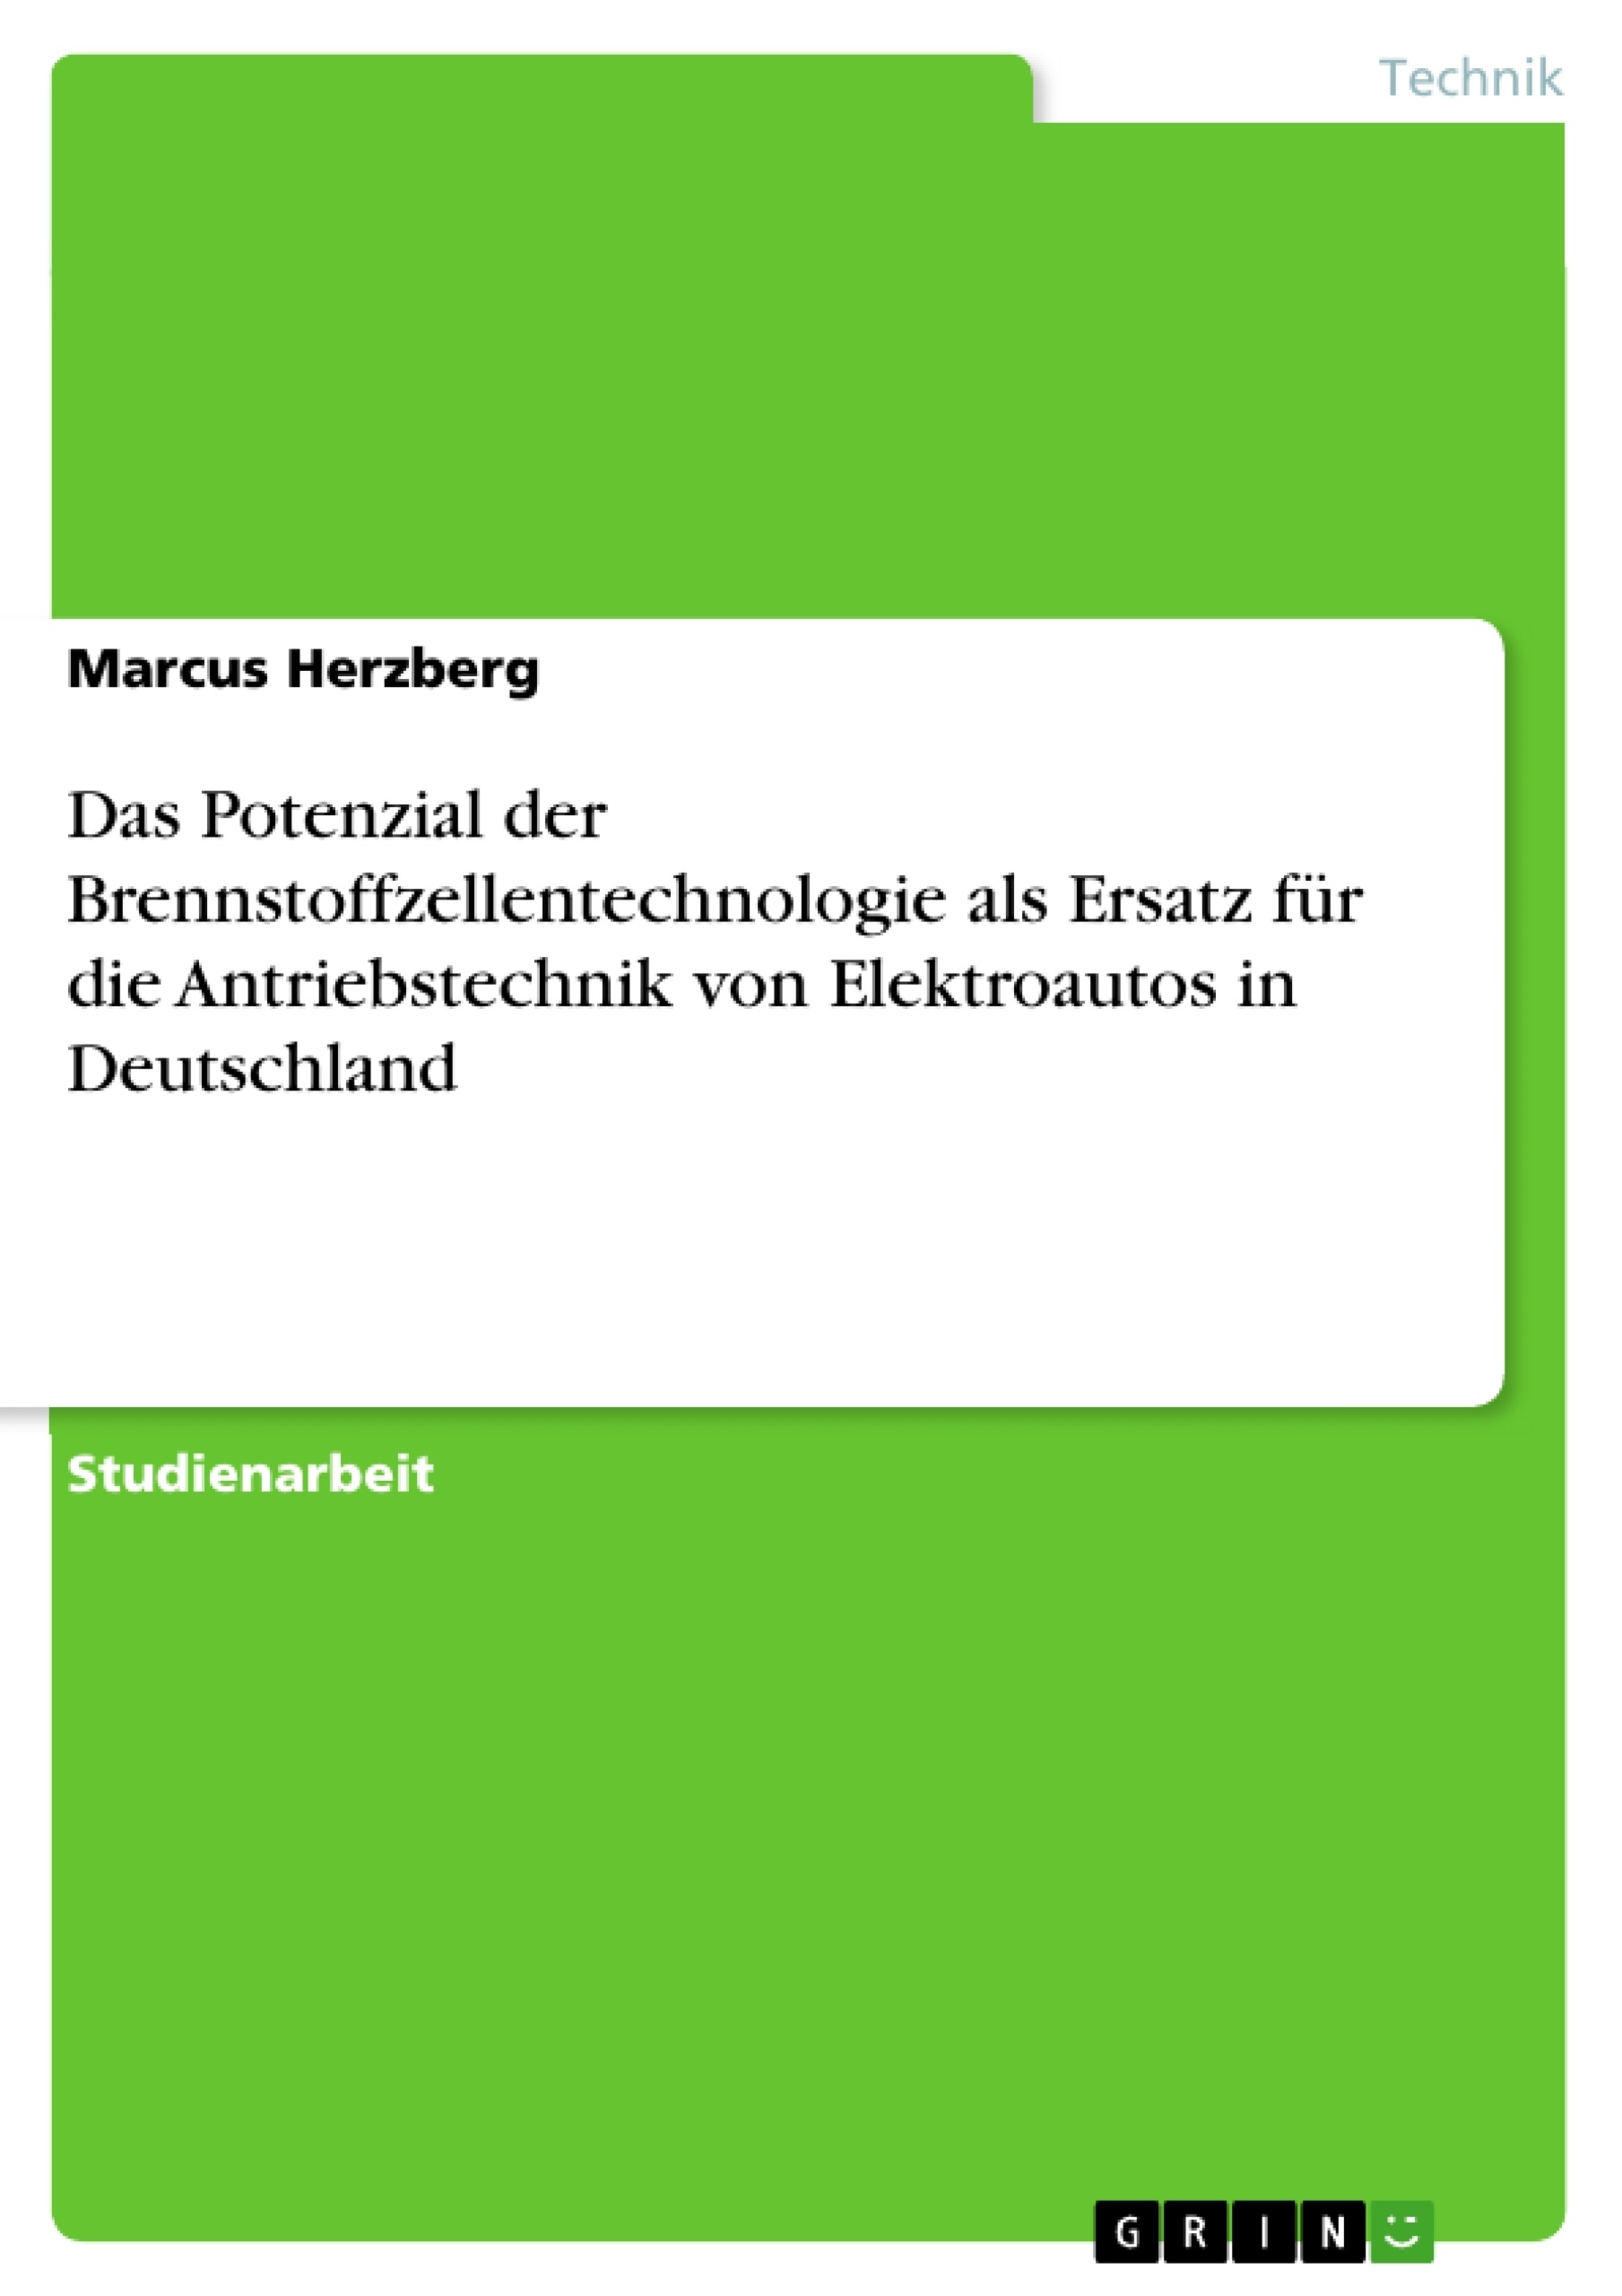 Titel: Das Potenzial der Brennstoffzellentechnologie als Ersatz für die Antriebstechnik von Elektroautos in Deutschland